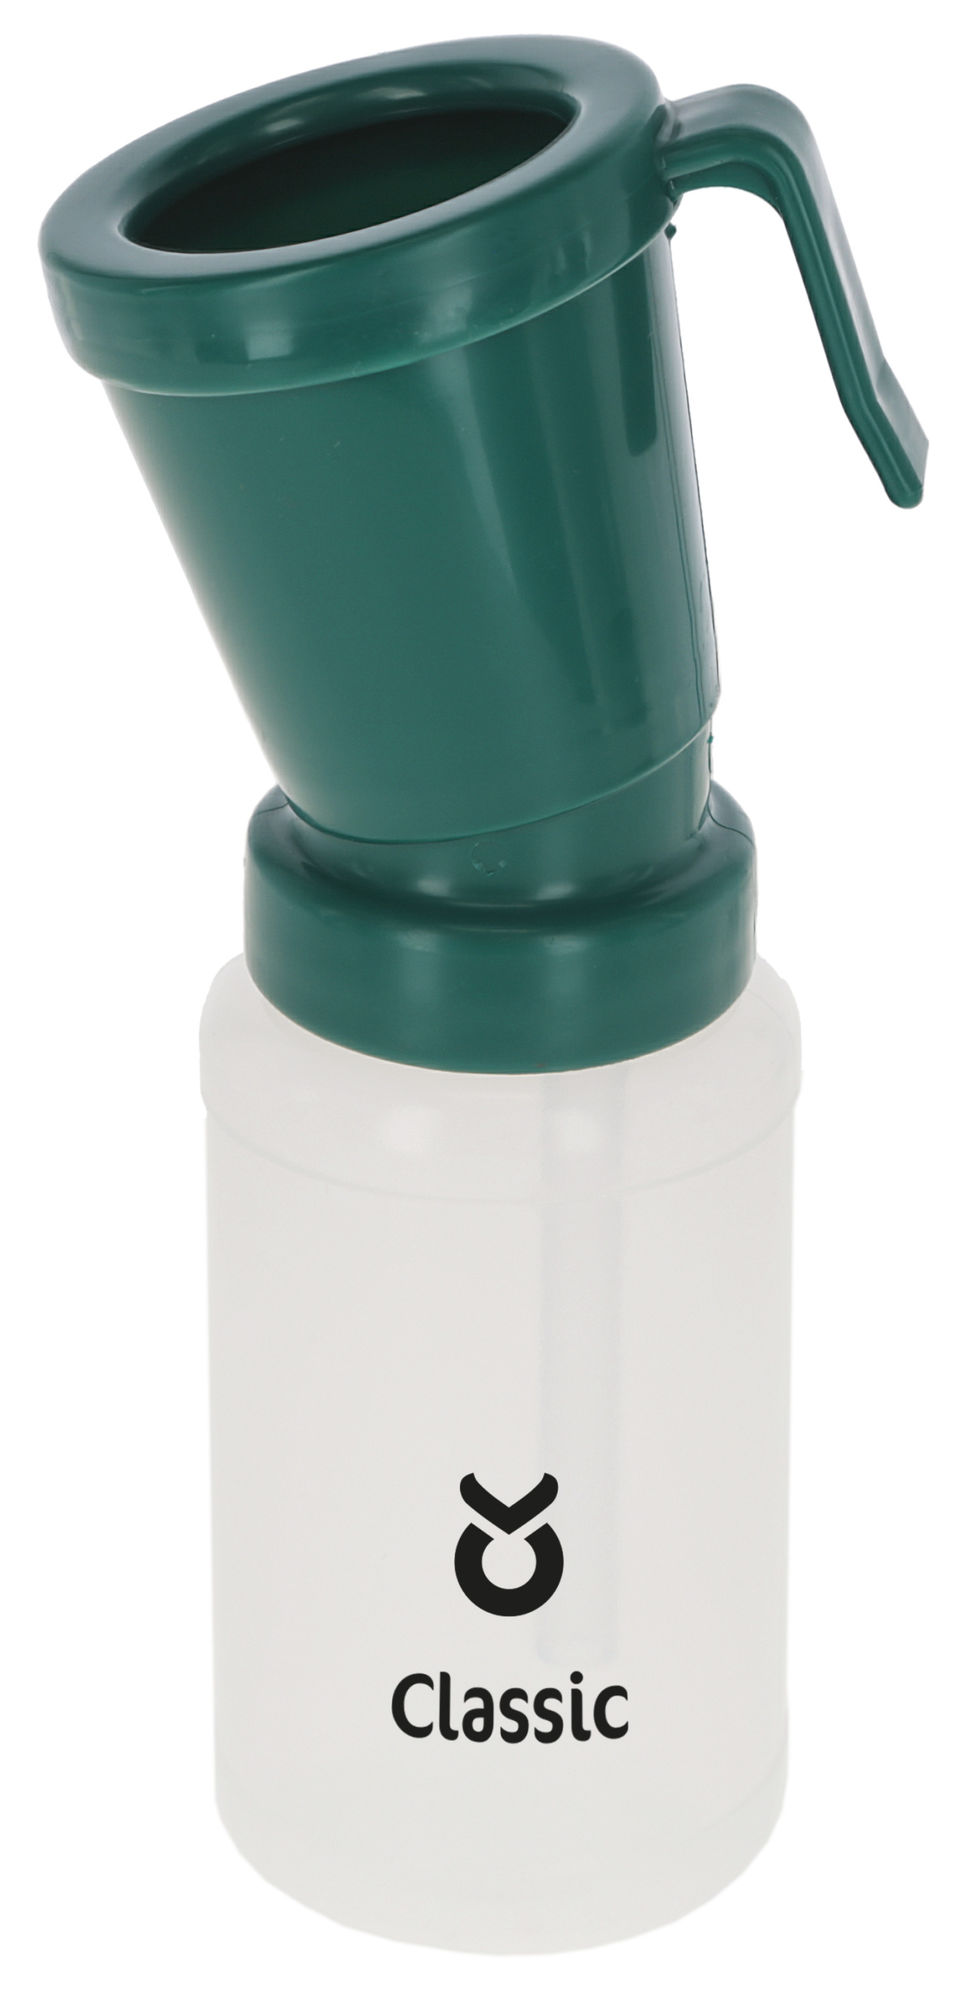 Kerbl Dippbecher Standard, 300 ml, grün